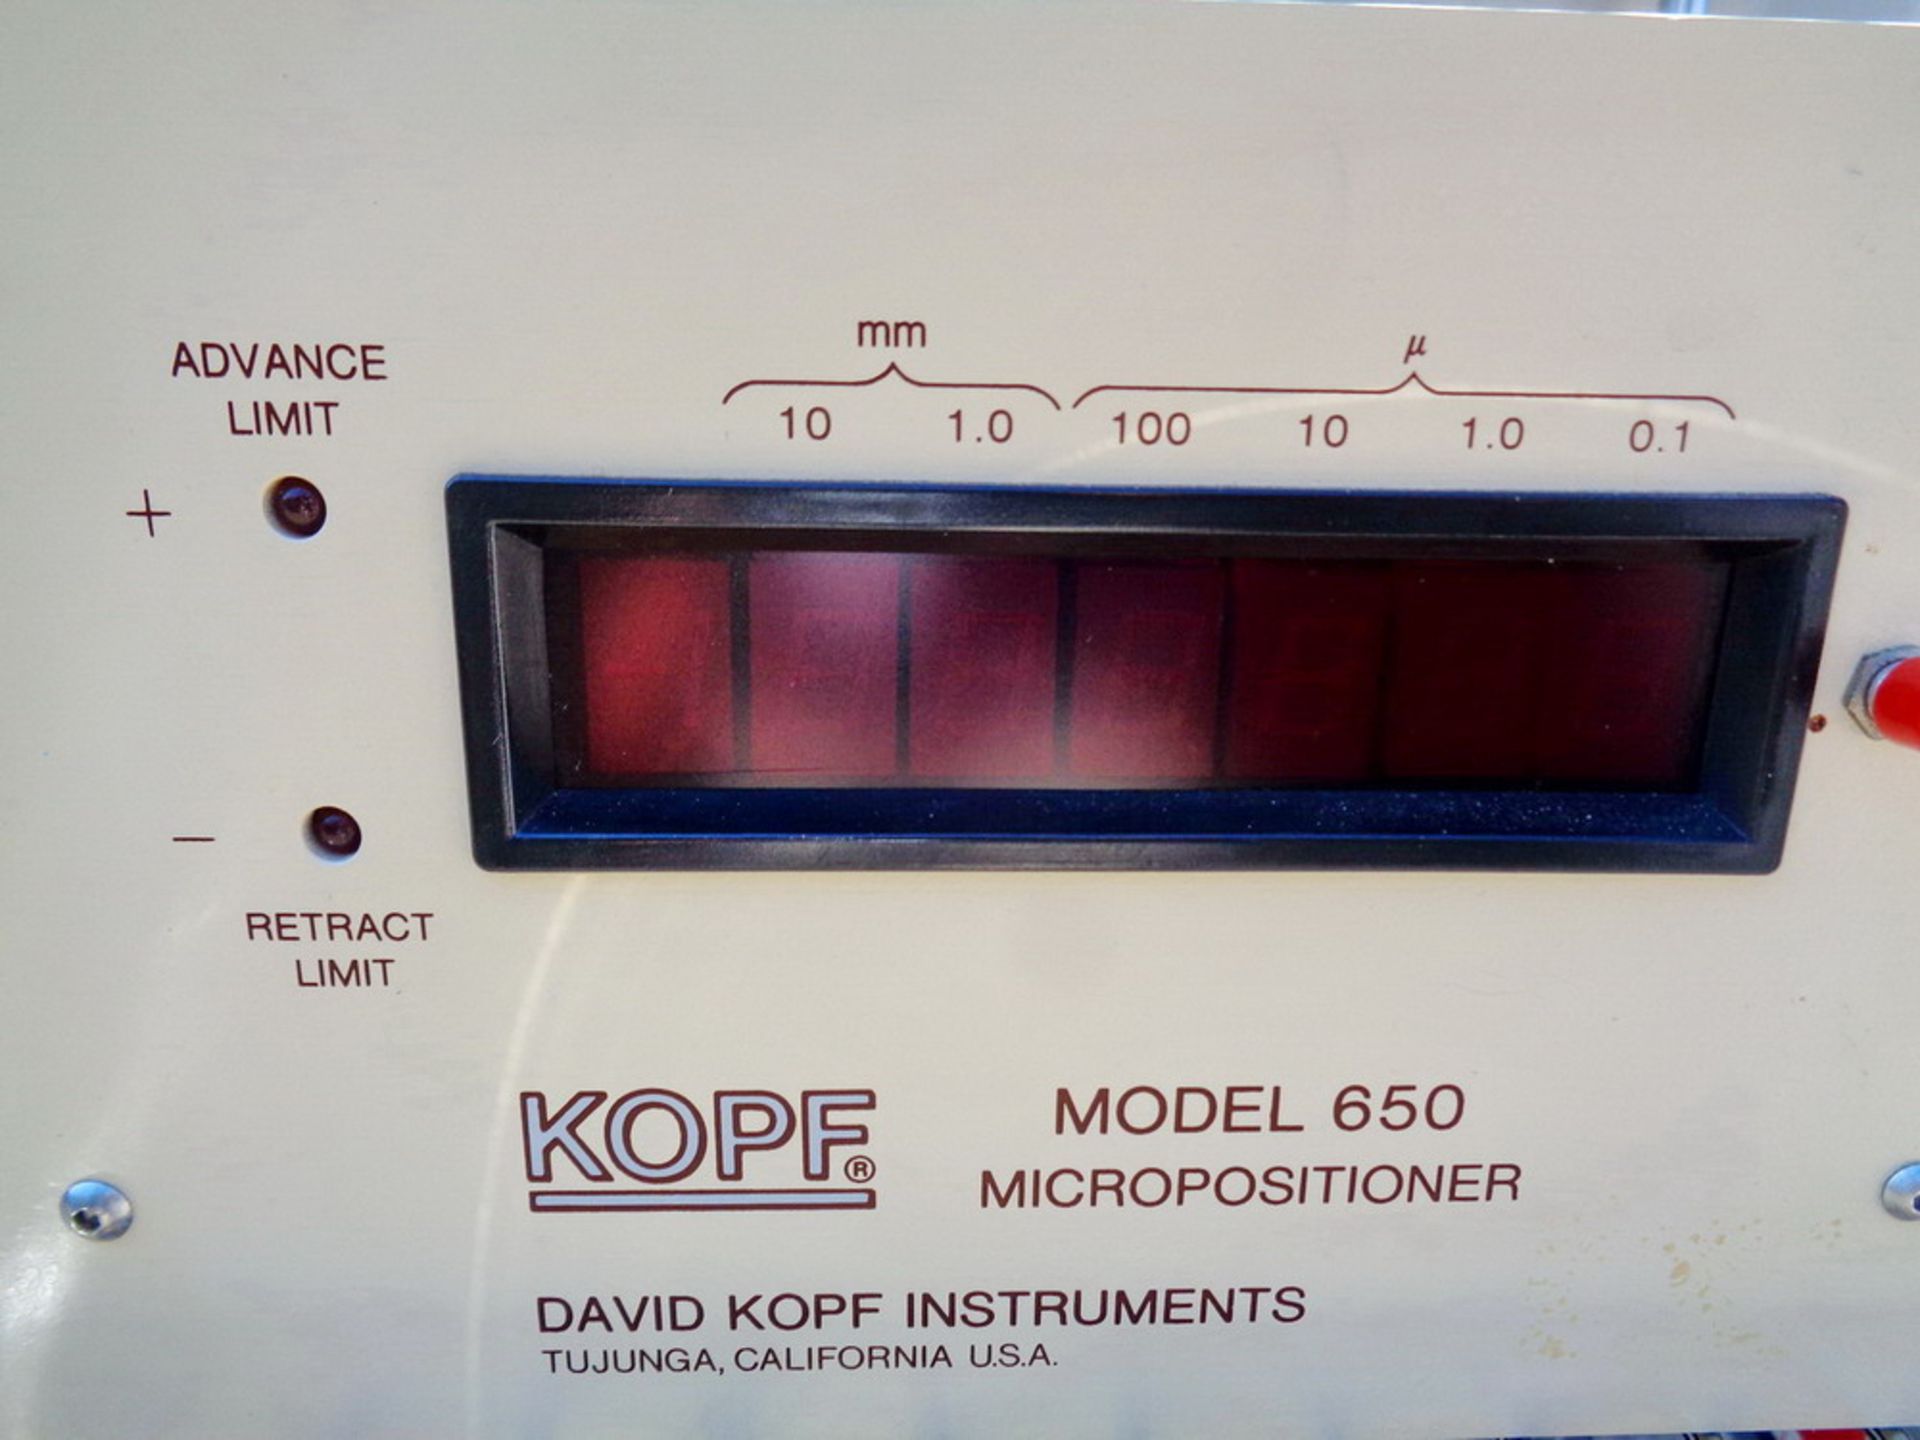 Kopf Model 650 Micropositioner, S/N 65004 - Image 2 of 3